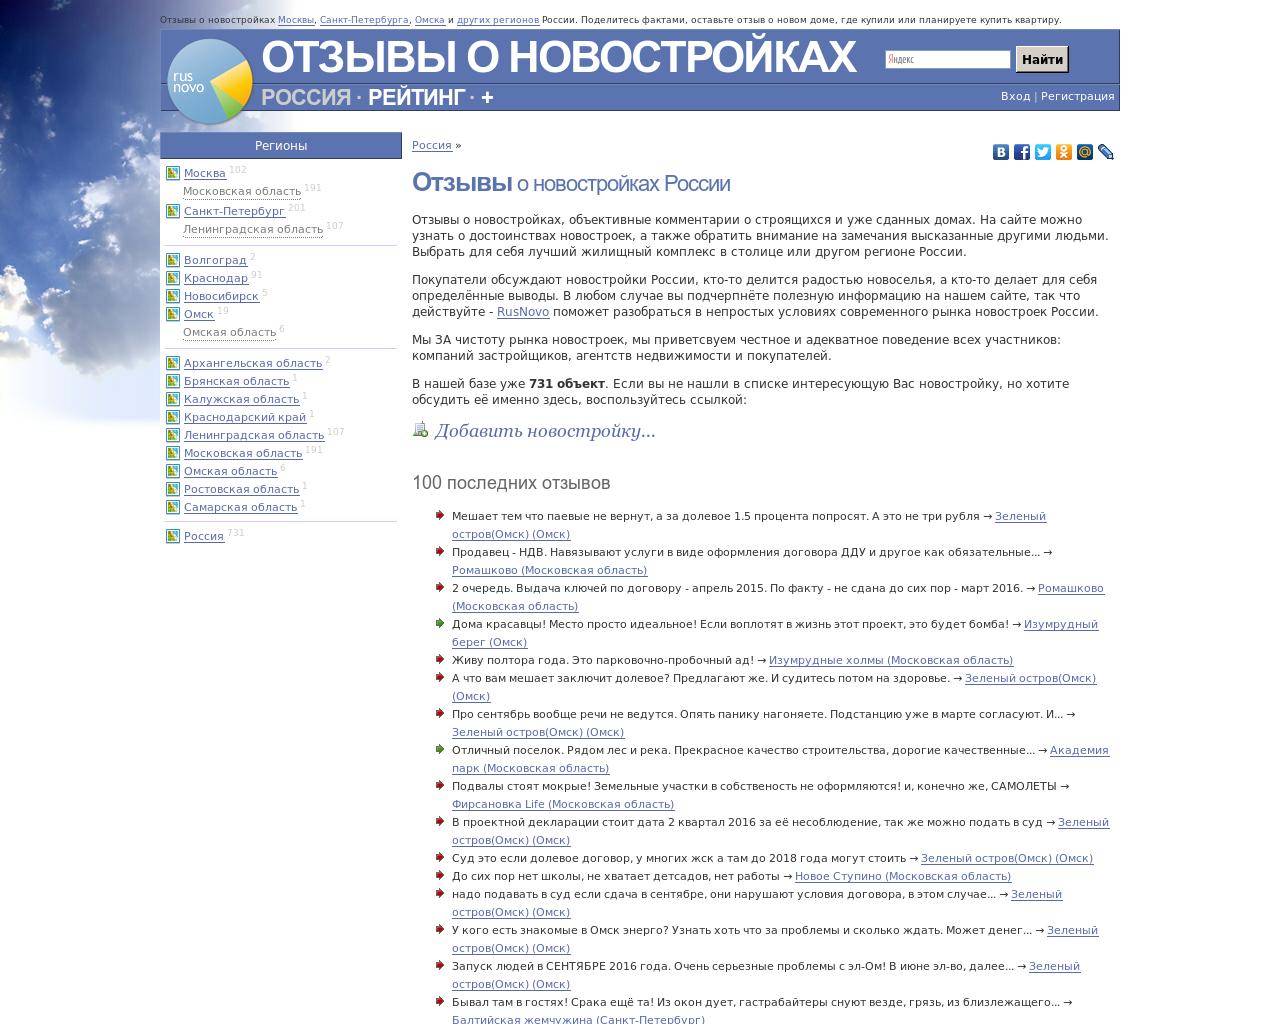 Изображение сайта rusnovo.ru в разрешении 1280x1024